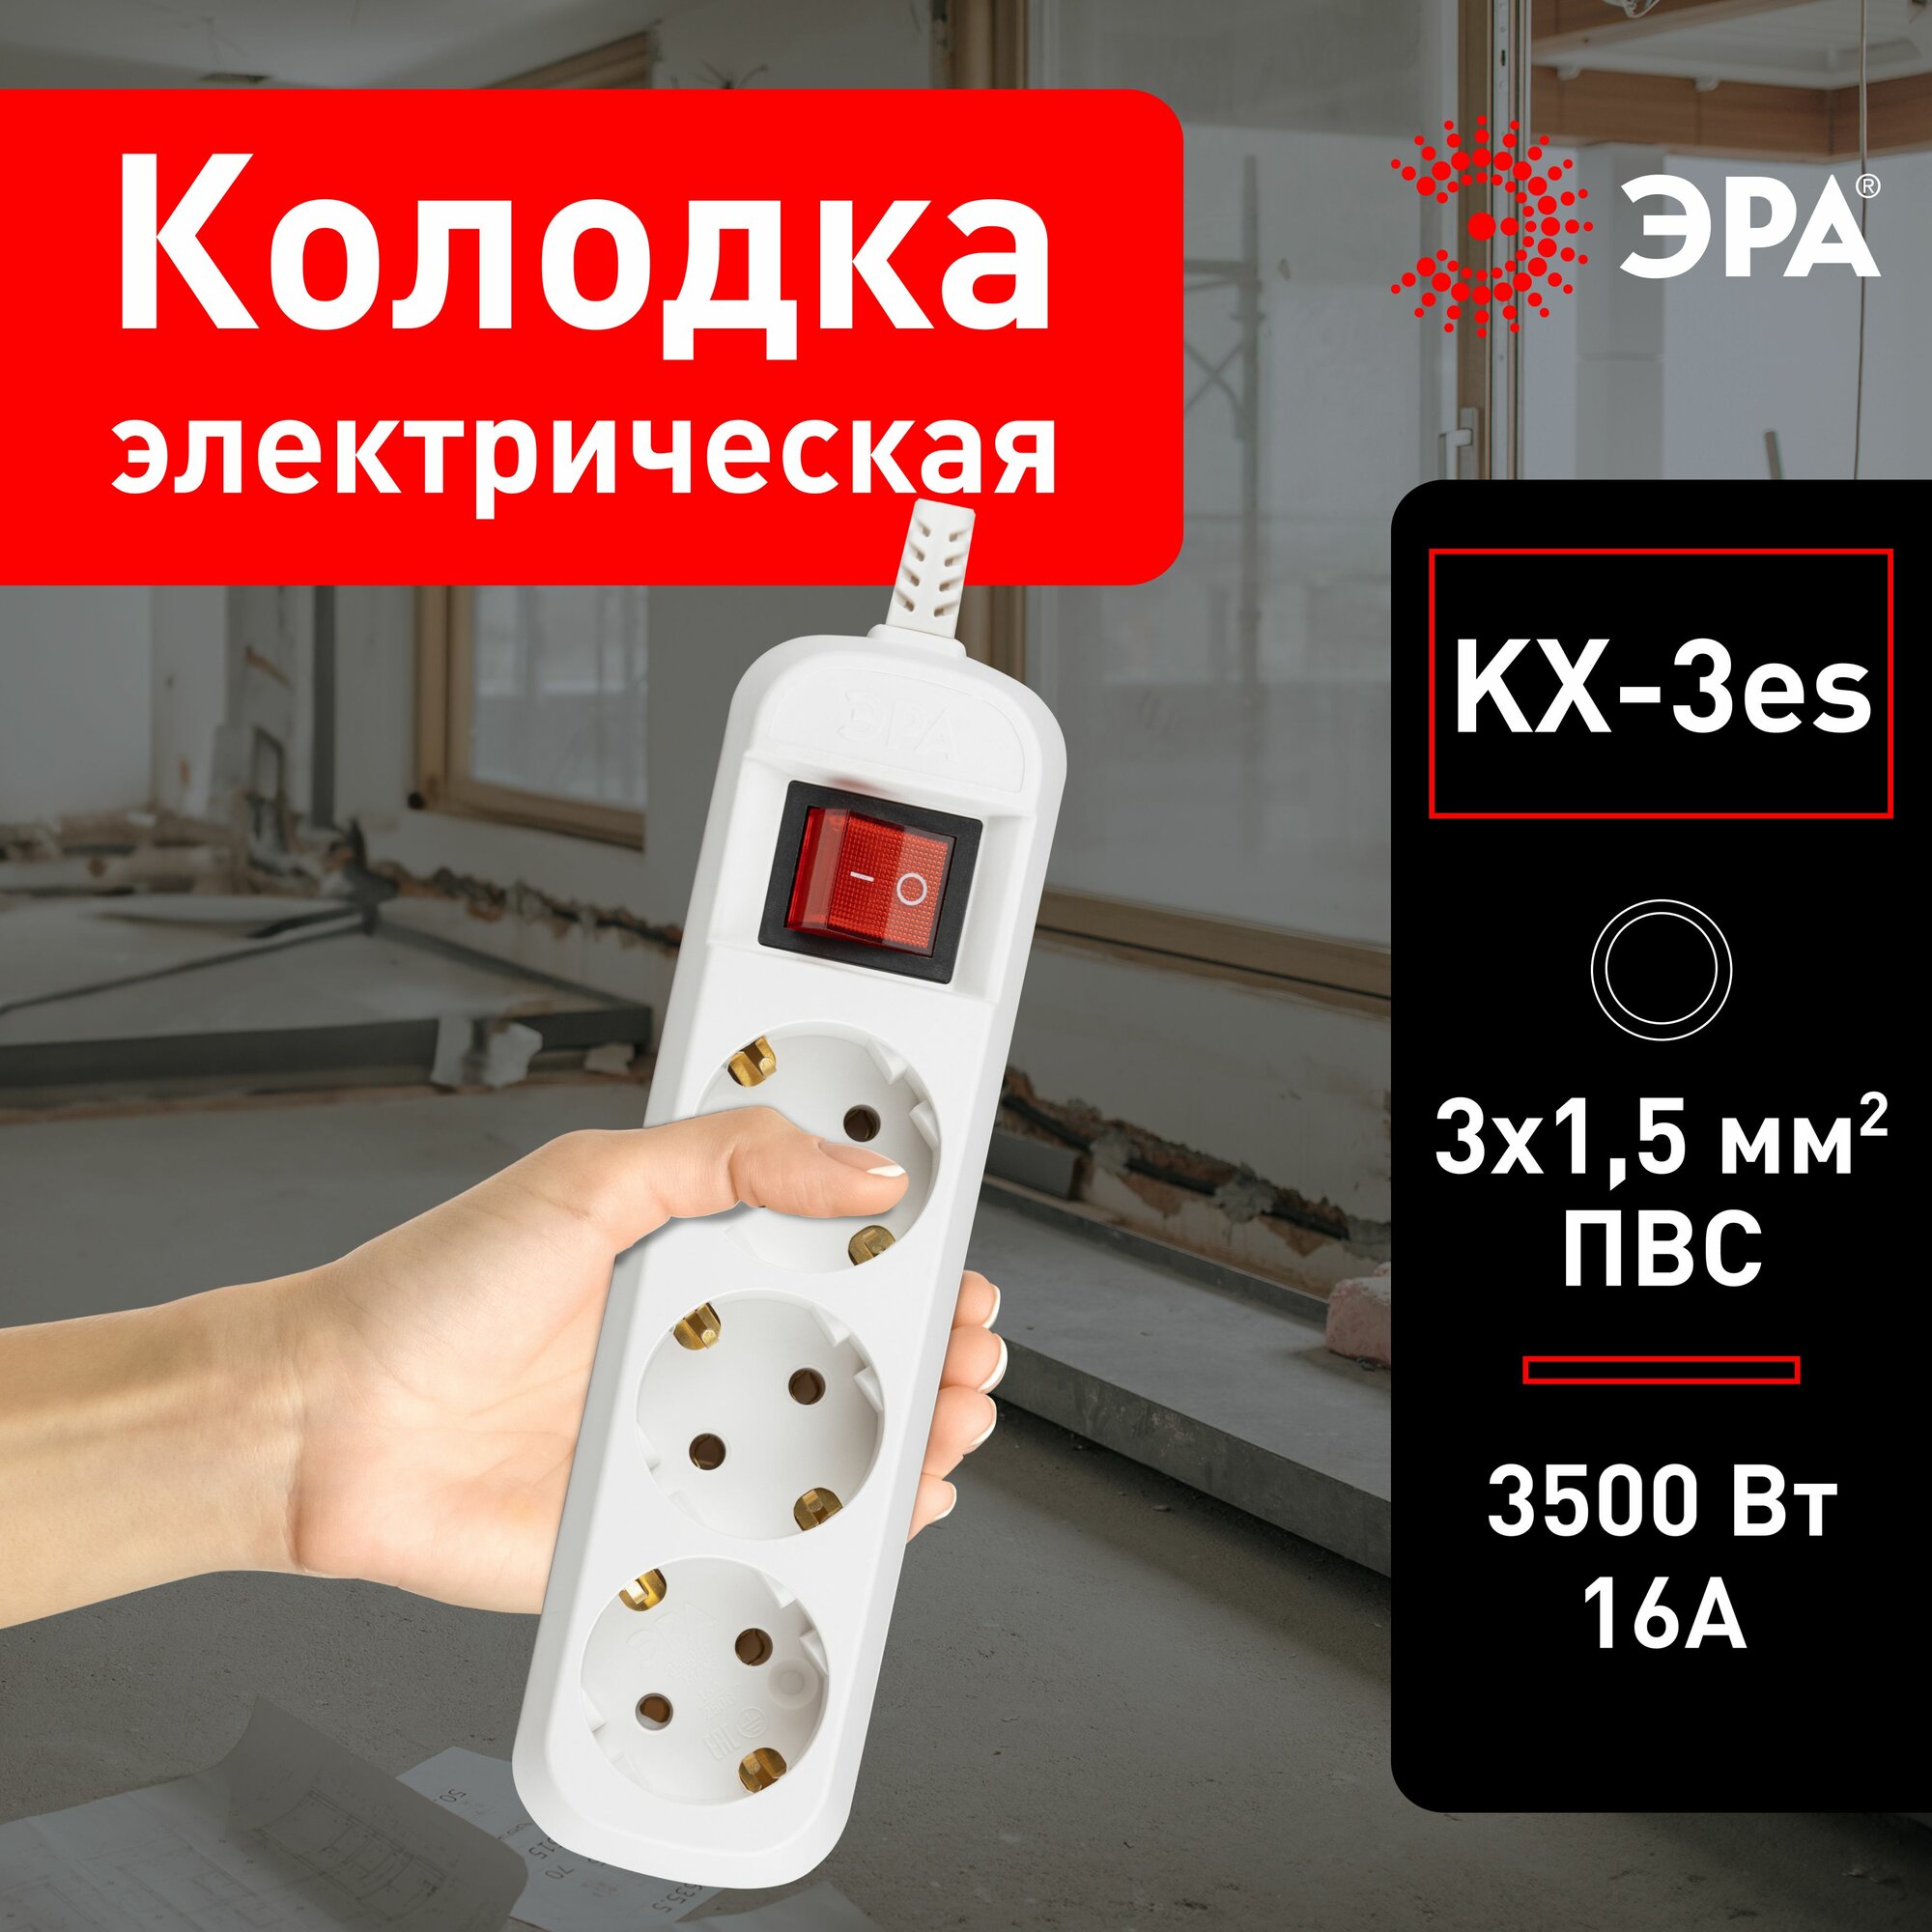 Колодка для удлинителя ЭРА KX-3es с зазeмлением и выключателем 3 гнезда, 16 А, 3500 Вт, 3x1,5мм2